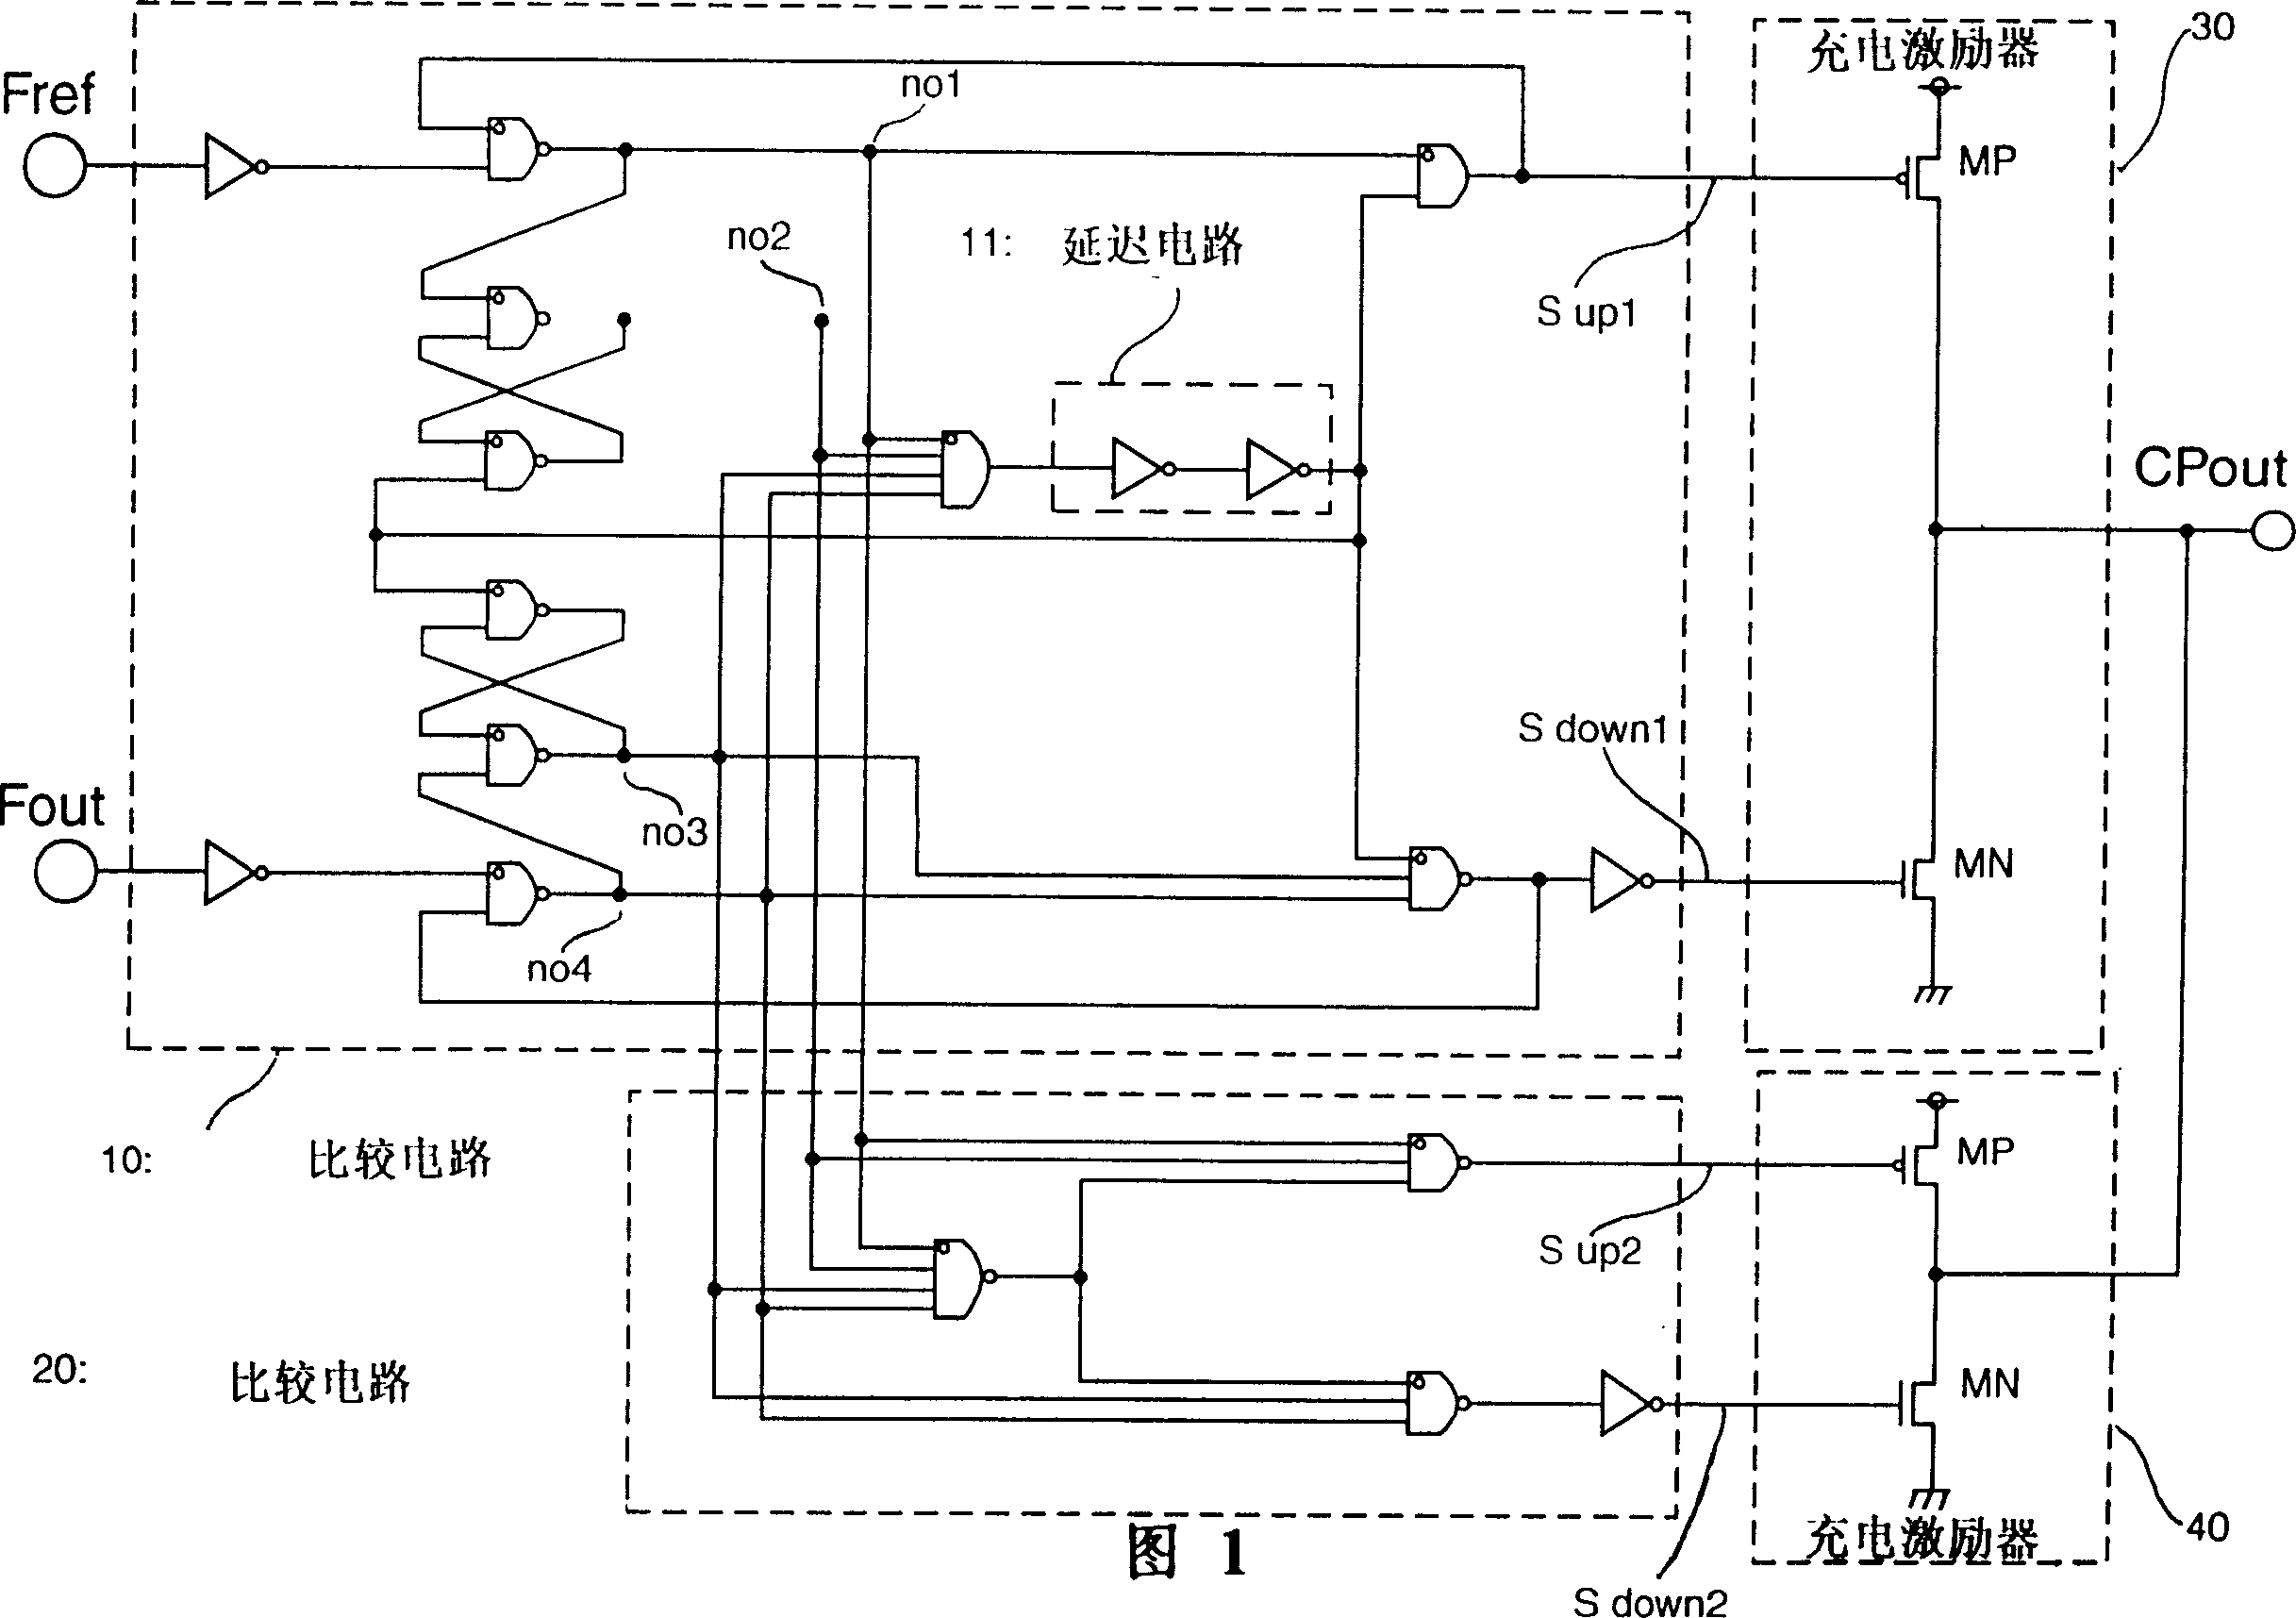 Phase locked loop circuit